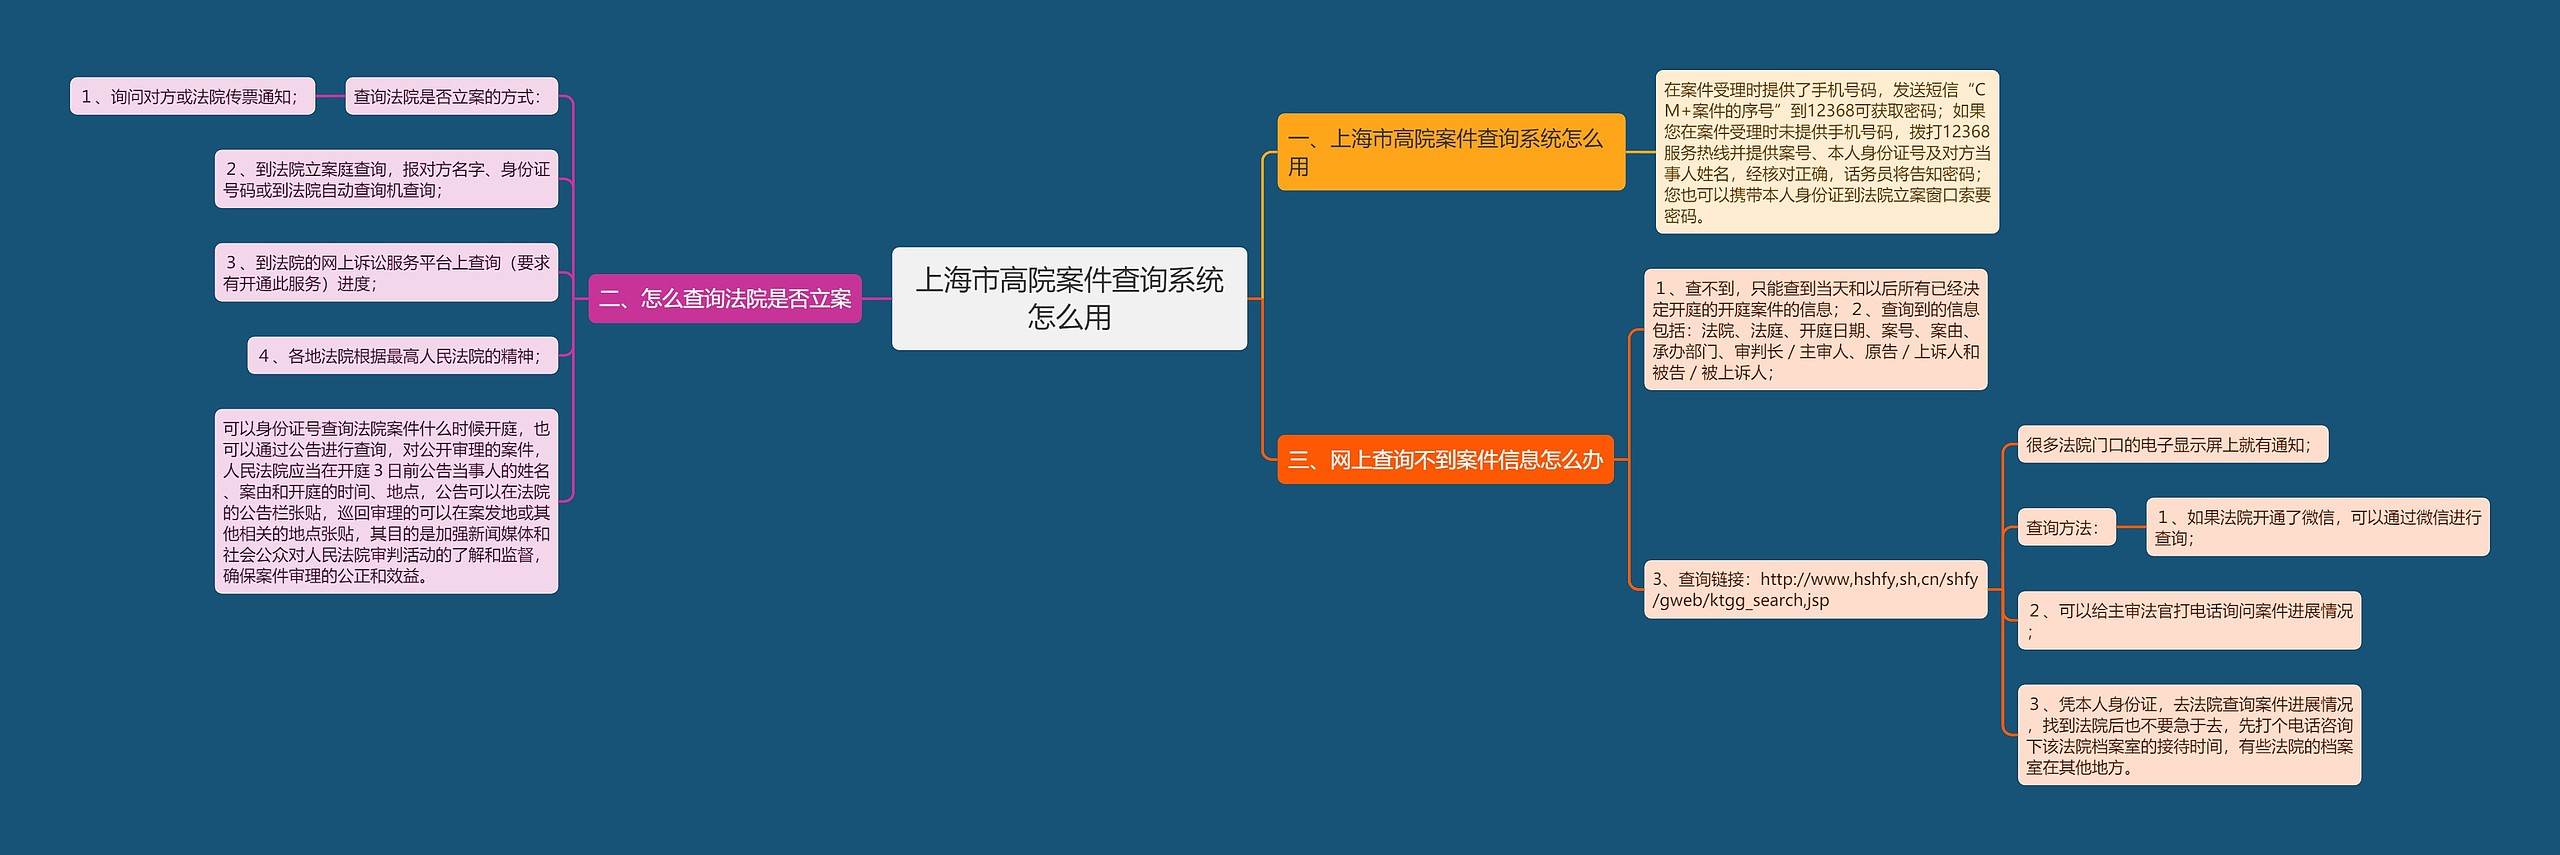 上海市高院案件查询系统怎么用思维导图